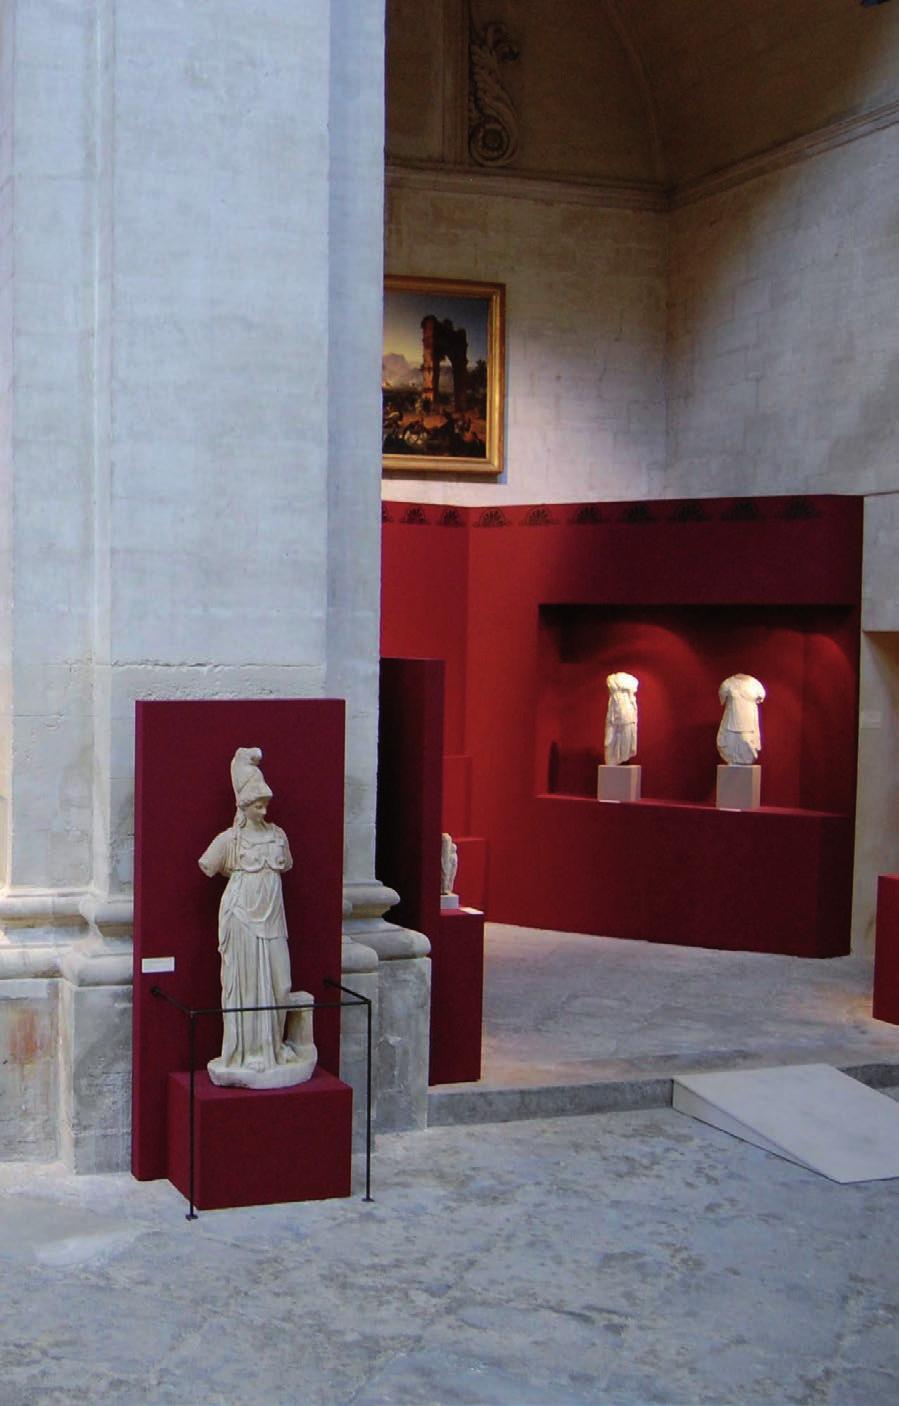 Από την ίδρυσή τους στη διάρκεια του 19ου αιώνα, μικρά και μεγαλύτερα μουσεία αδυνατούσαν να διανοηθούν την ύπαρξή τους χωρίς αντικείμενα από τους αρχαίους πολιτισμούς και κυρίως από τον